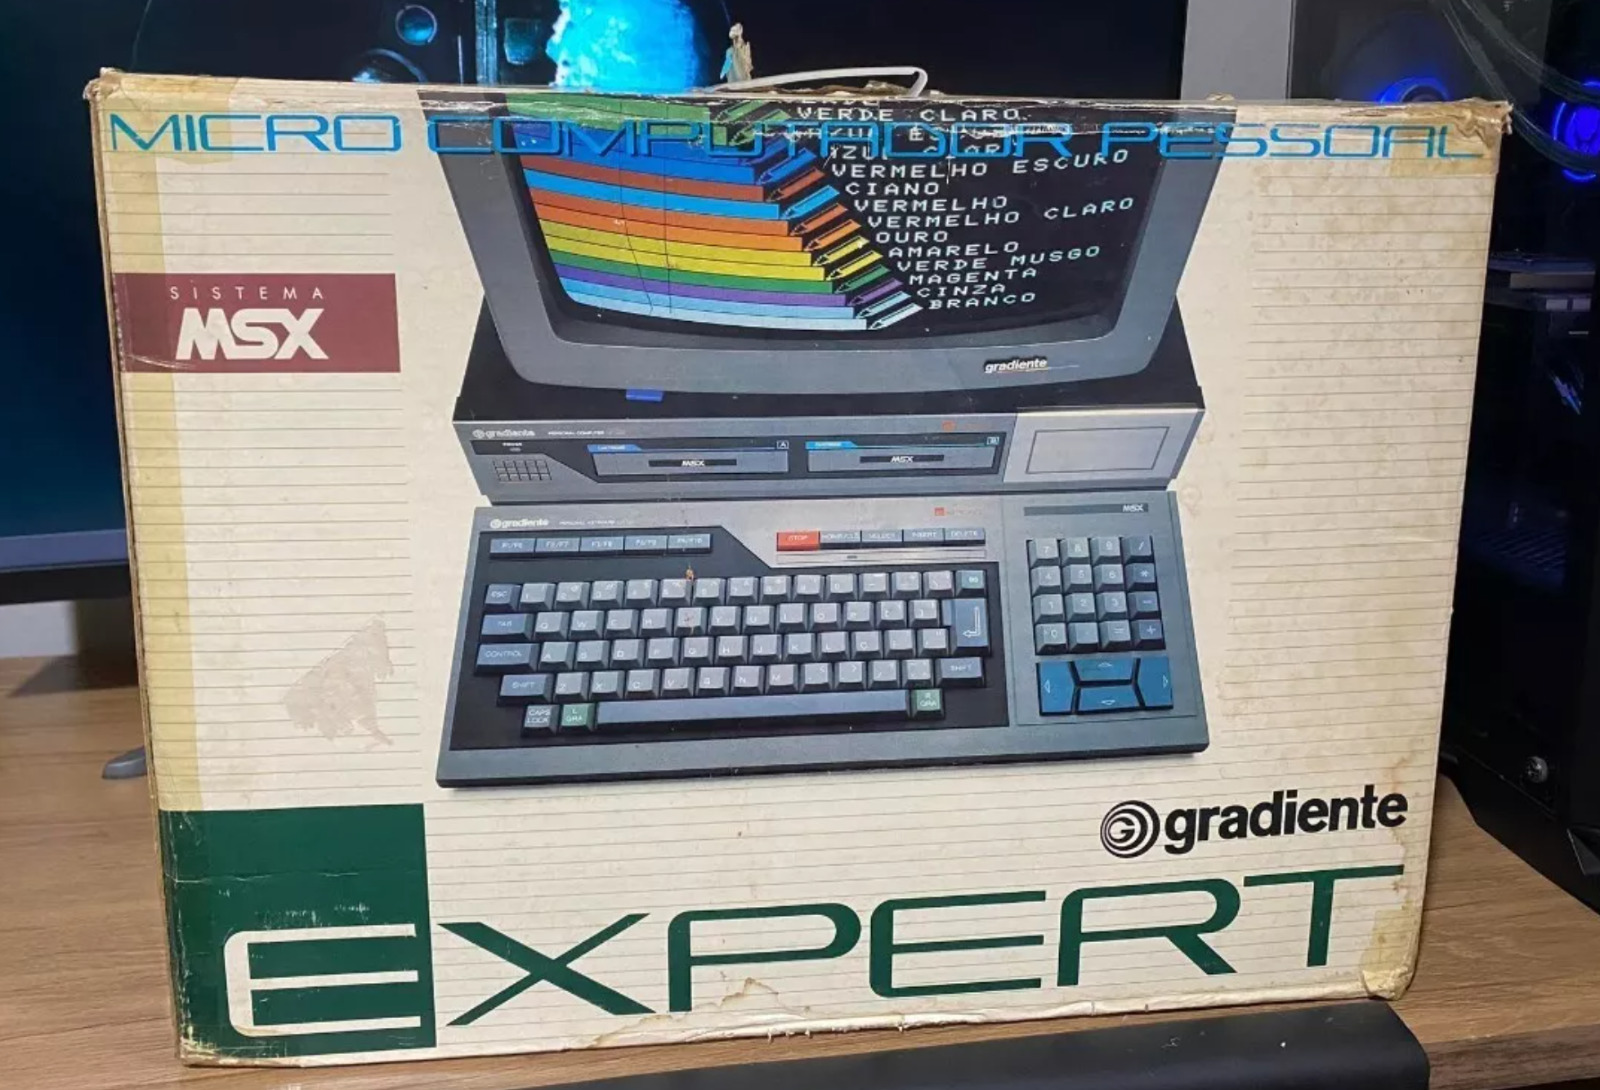 GRADIENTE BRAZILIAN MSX COMPUTER 1985 IN BOX - IN AMAZING CONDITIONS VERY RARE